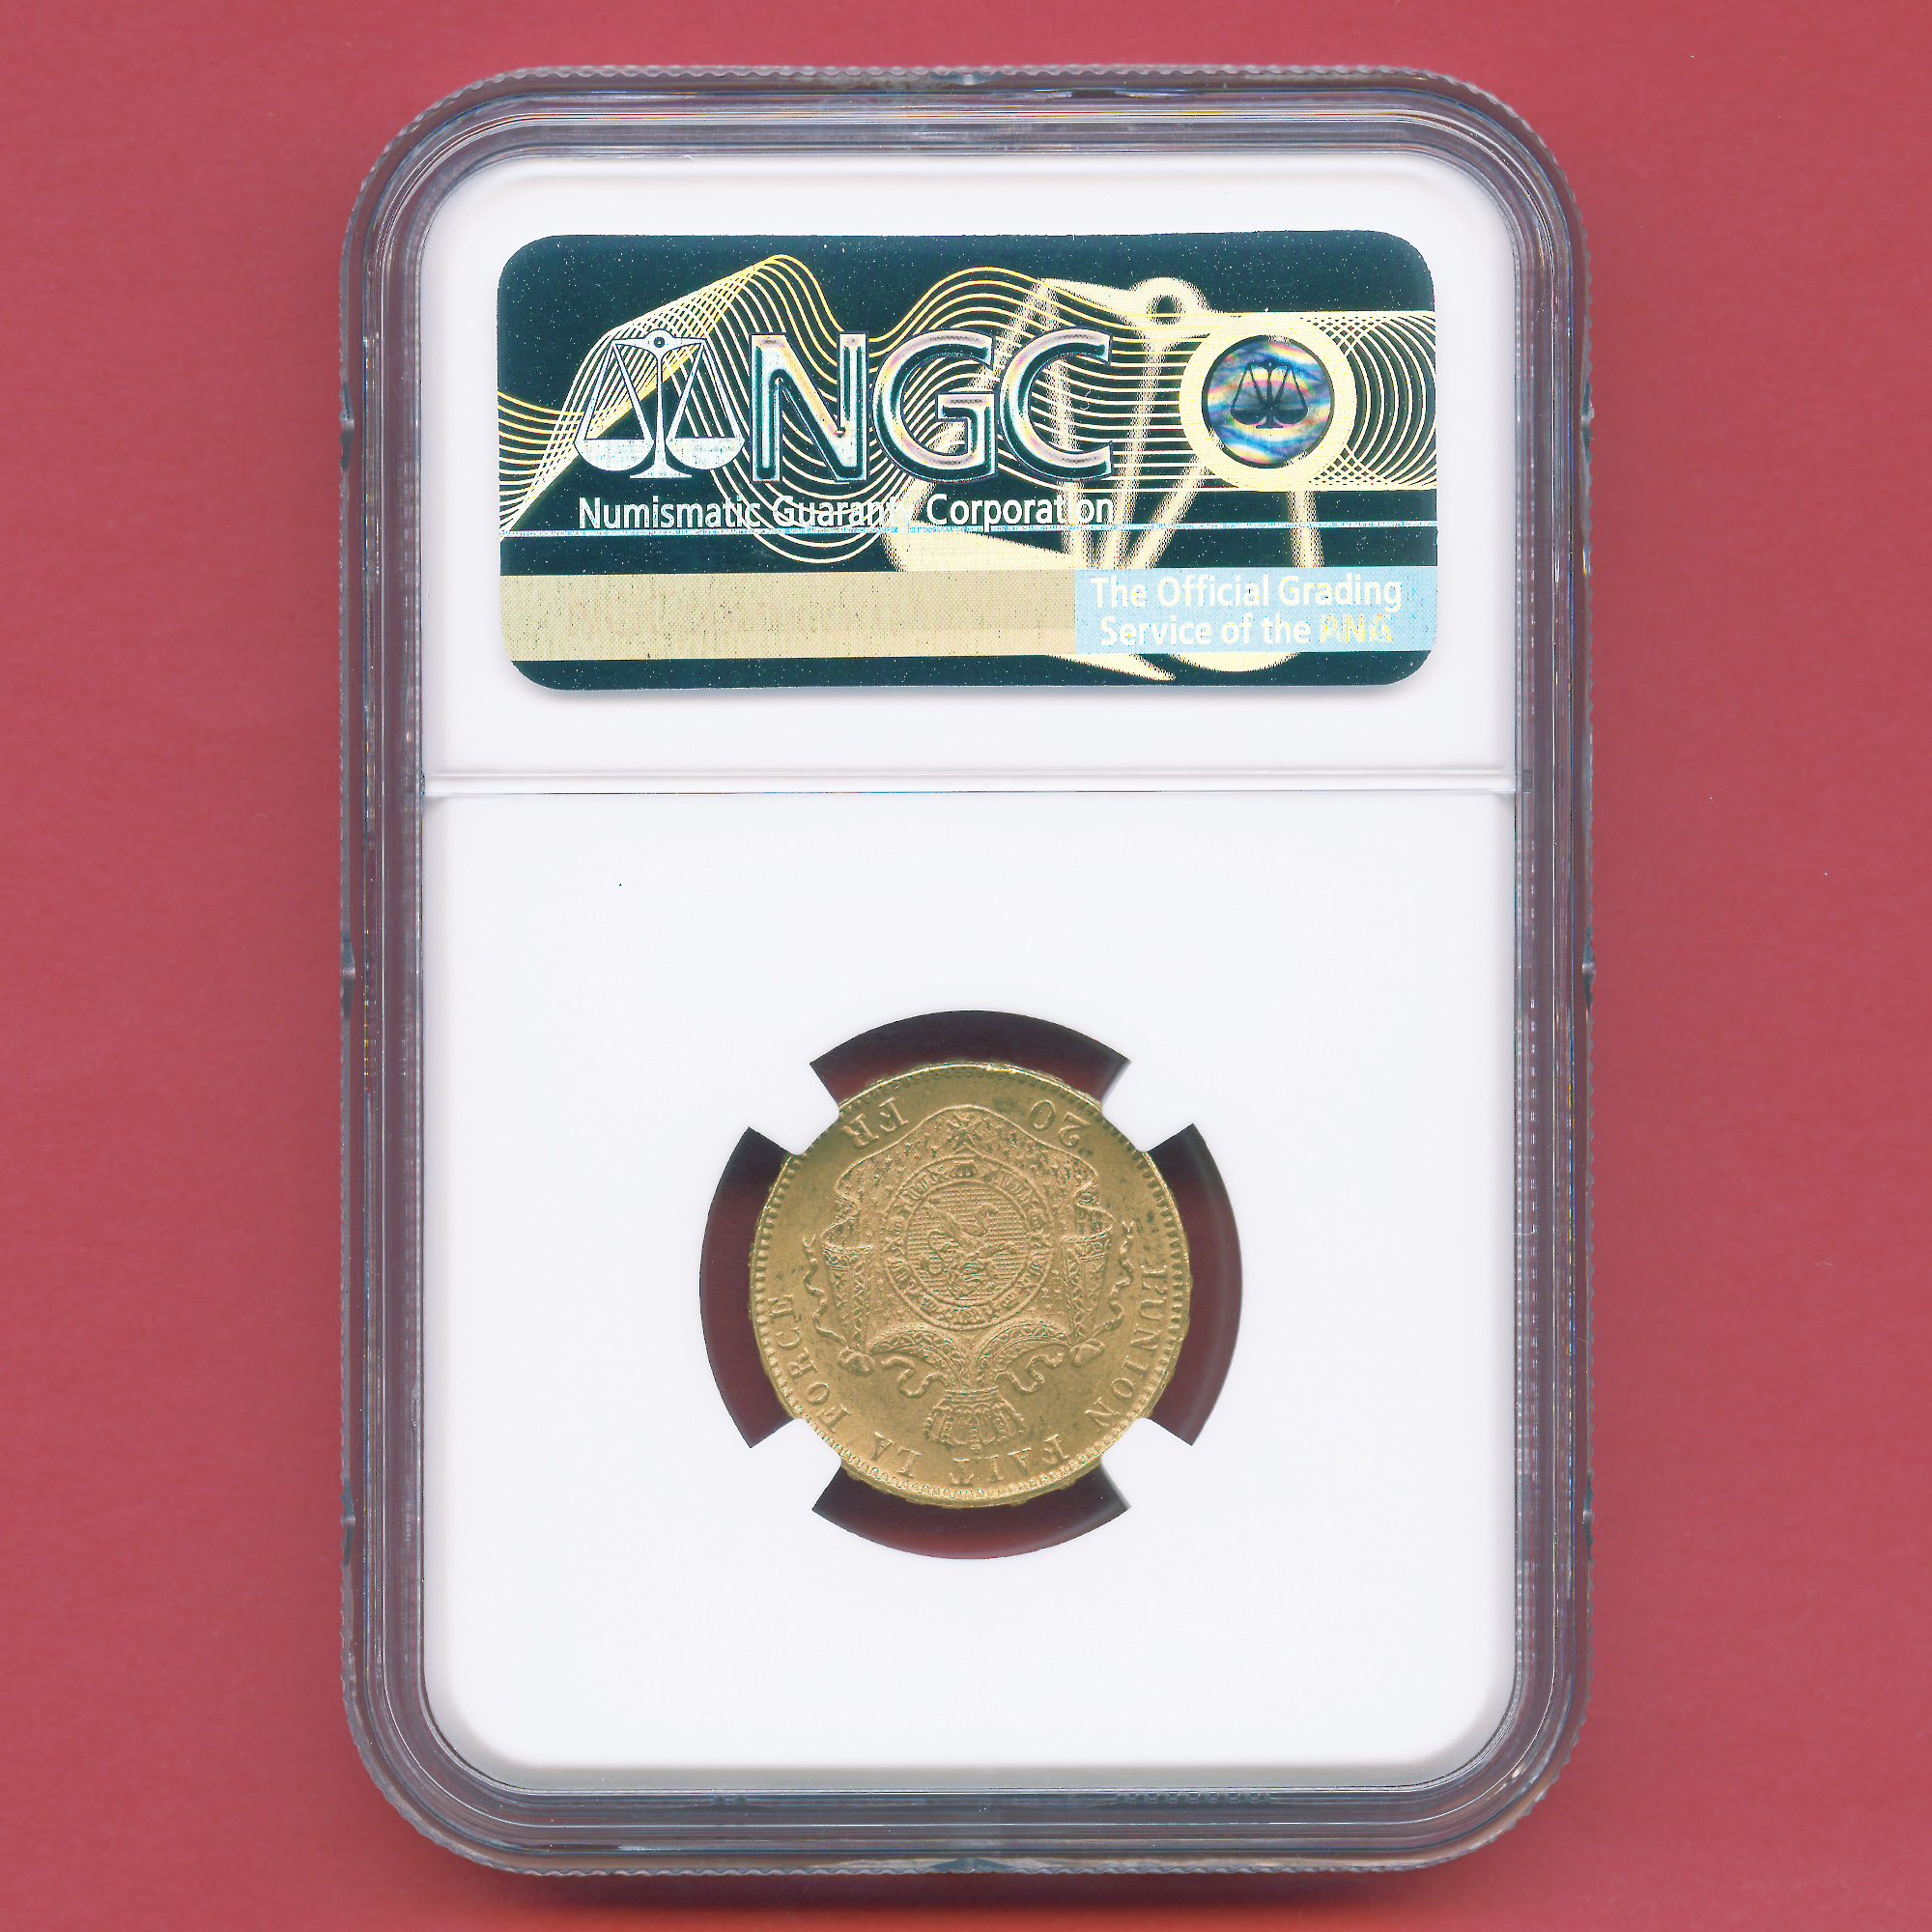 全コイン :: アンティーク :: ベルギー 20フラン金貨 レオポルド2世